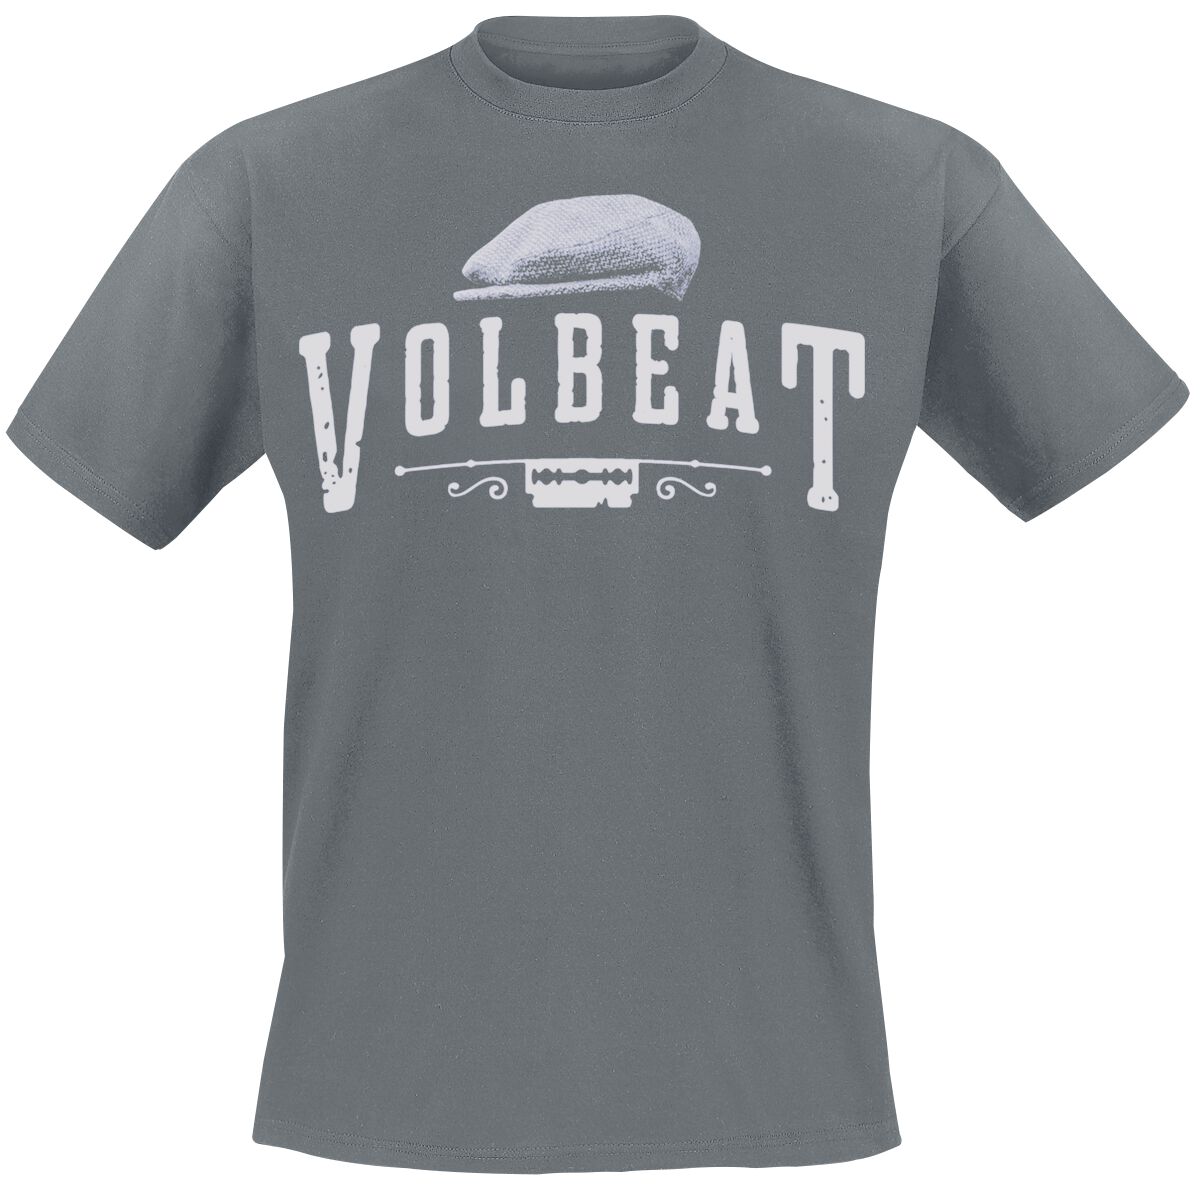 Volbeat T-Shirt - Sixpence - Rewind, Replay, Rebound - S bis XXL - für Männer - Größe M - charcoal  - EMP exklusives Merchandise!